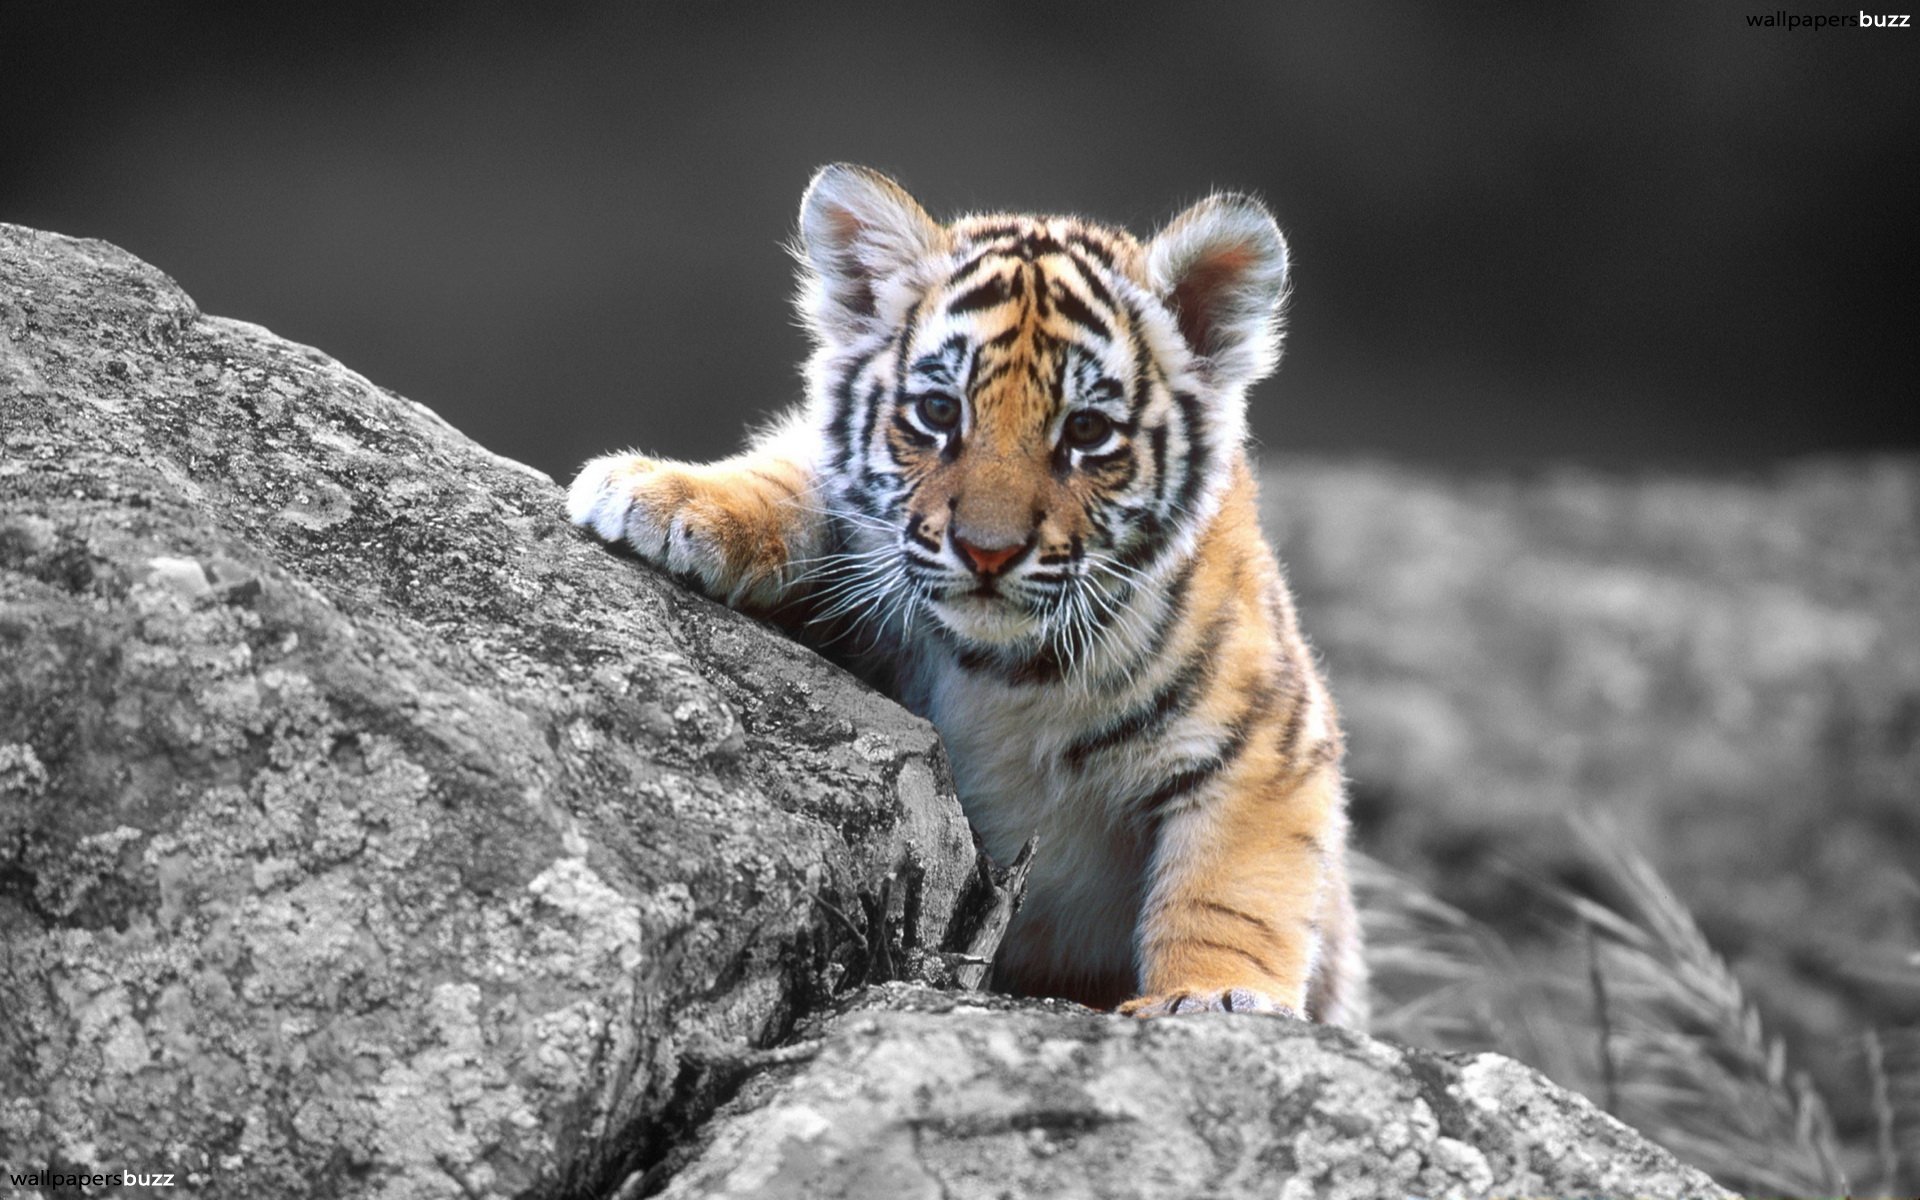 A little tiger HD Wallpaper